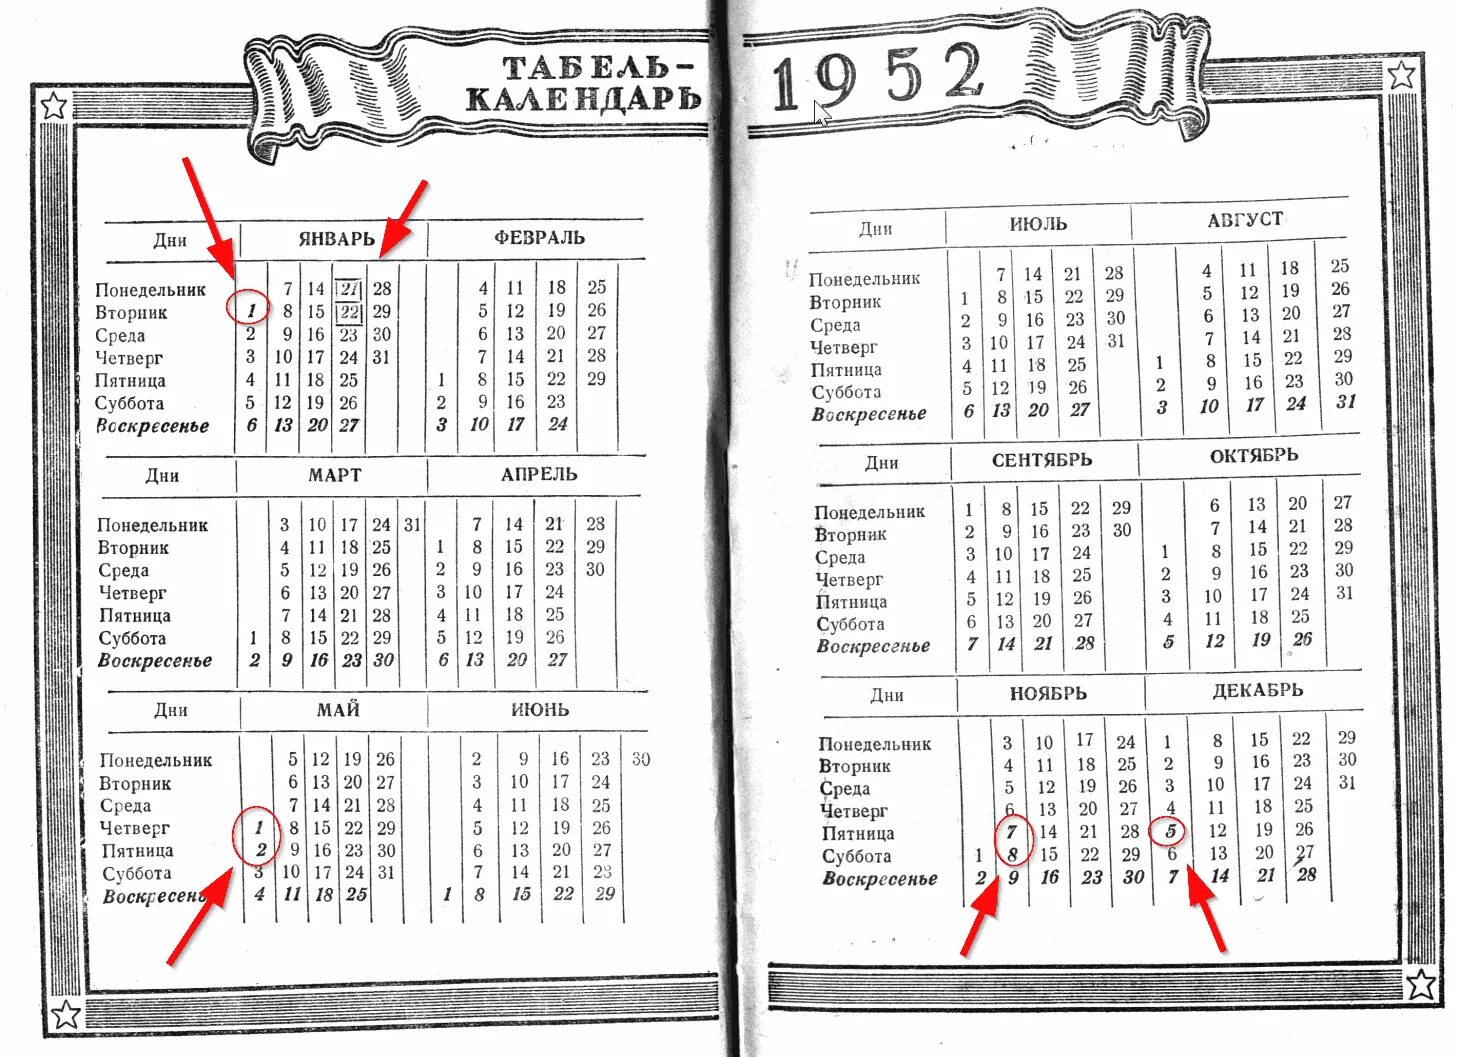 Какой день недели был 6 сентября. Календарь 1952 года. Календарь 1952 года по месяцам и дням. Табель календарь 1952.